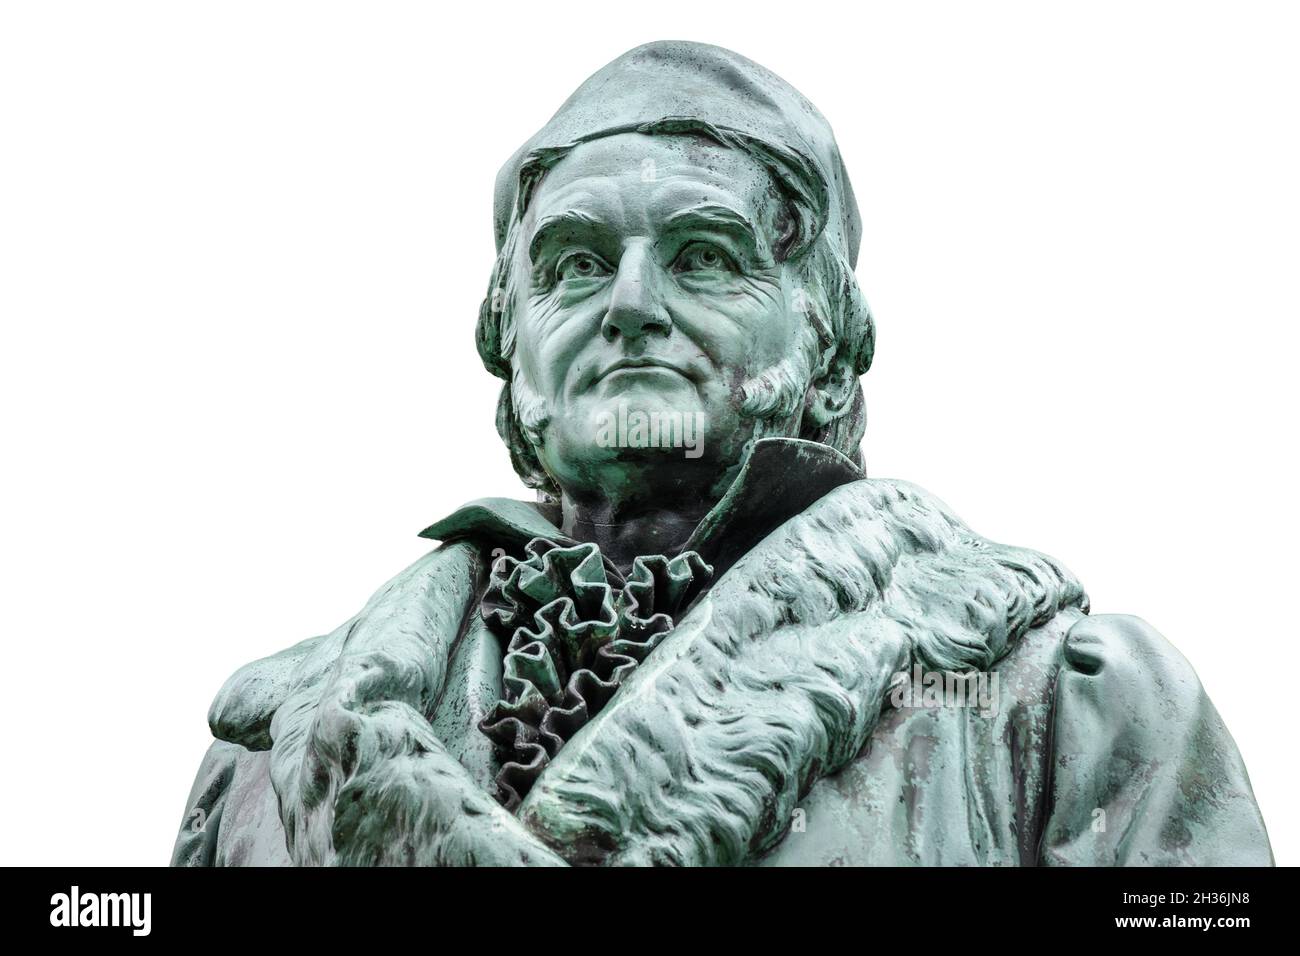 Statua storica di Carl Friedrich Gauss nel suo luogo di nascita a Braunschweig, Germania. Famoso matematico (1777-1855), isolato su sfondo bianco. Foto Stock